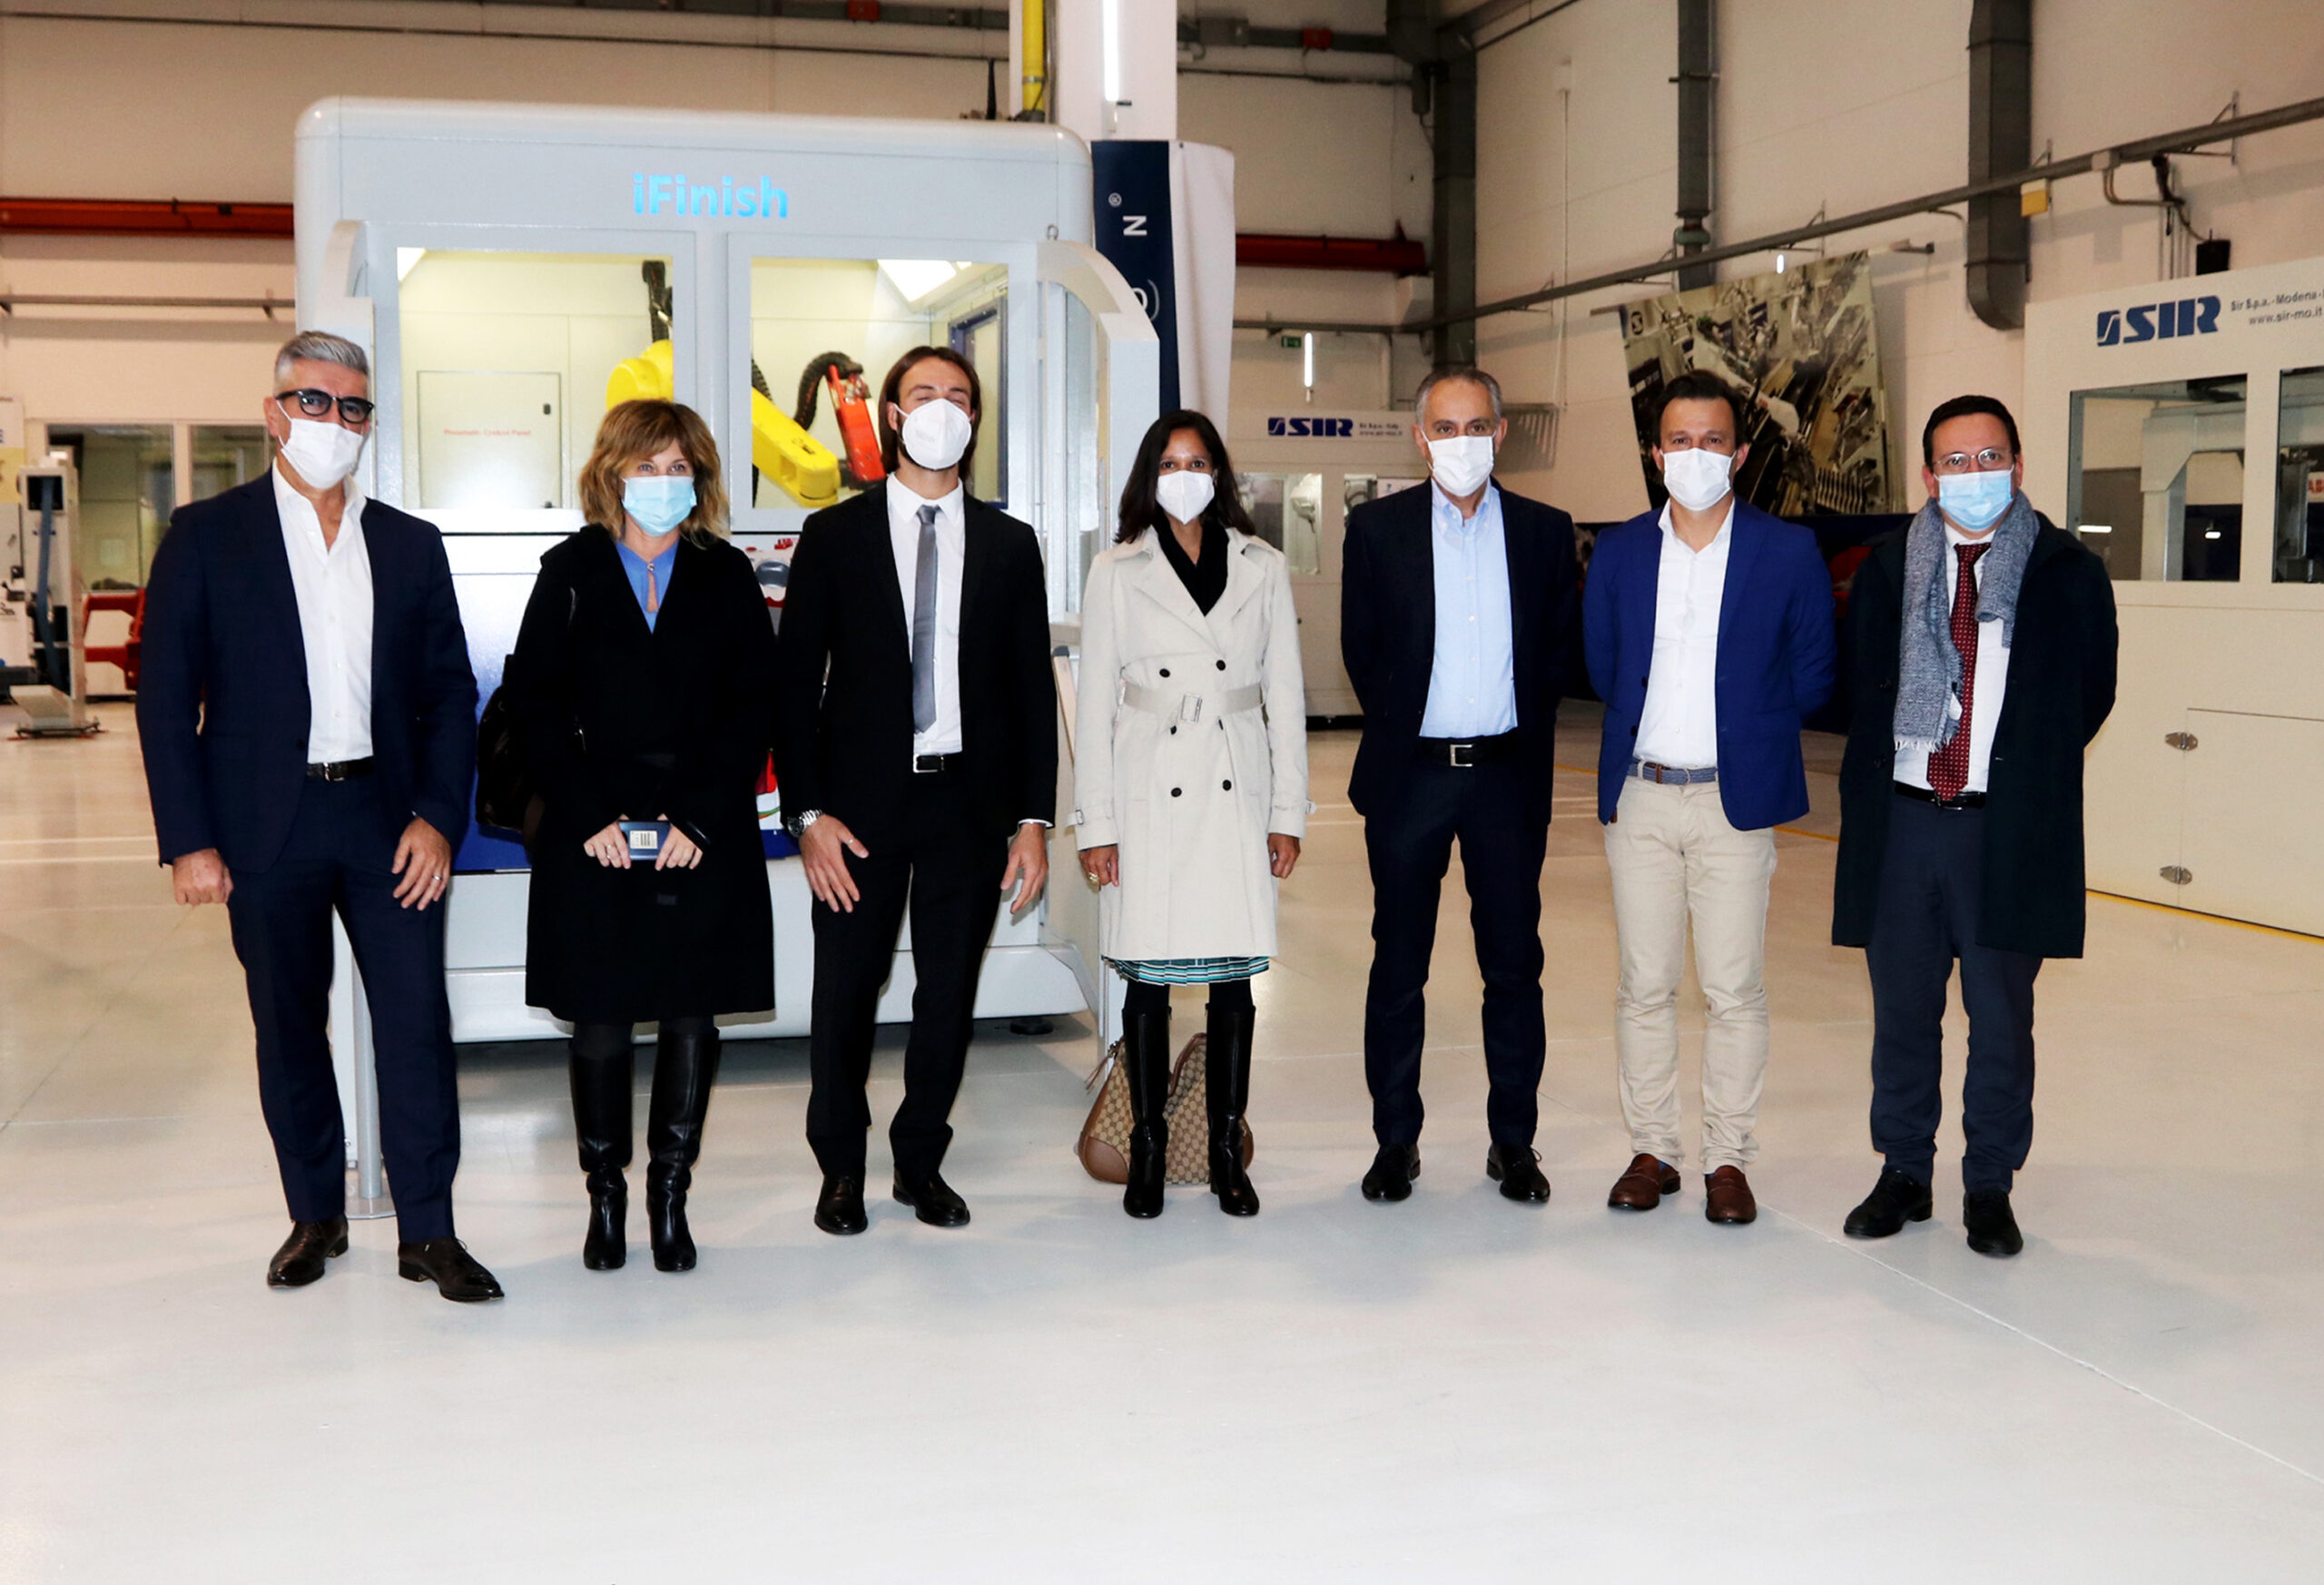 Amerikanischer Konsul besucht Sir Robotics Modena